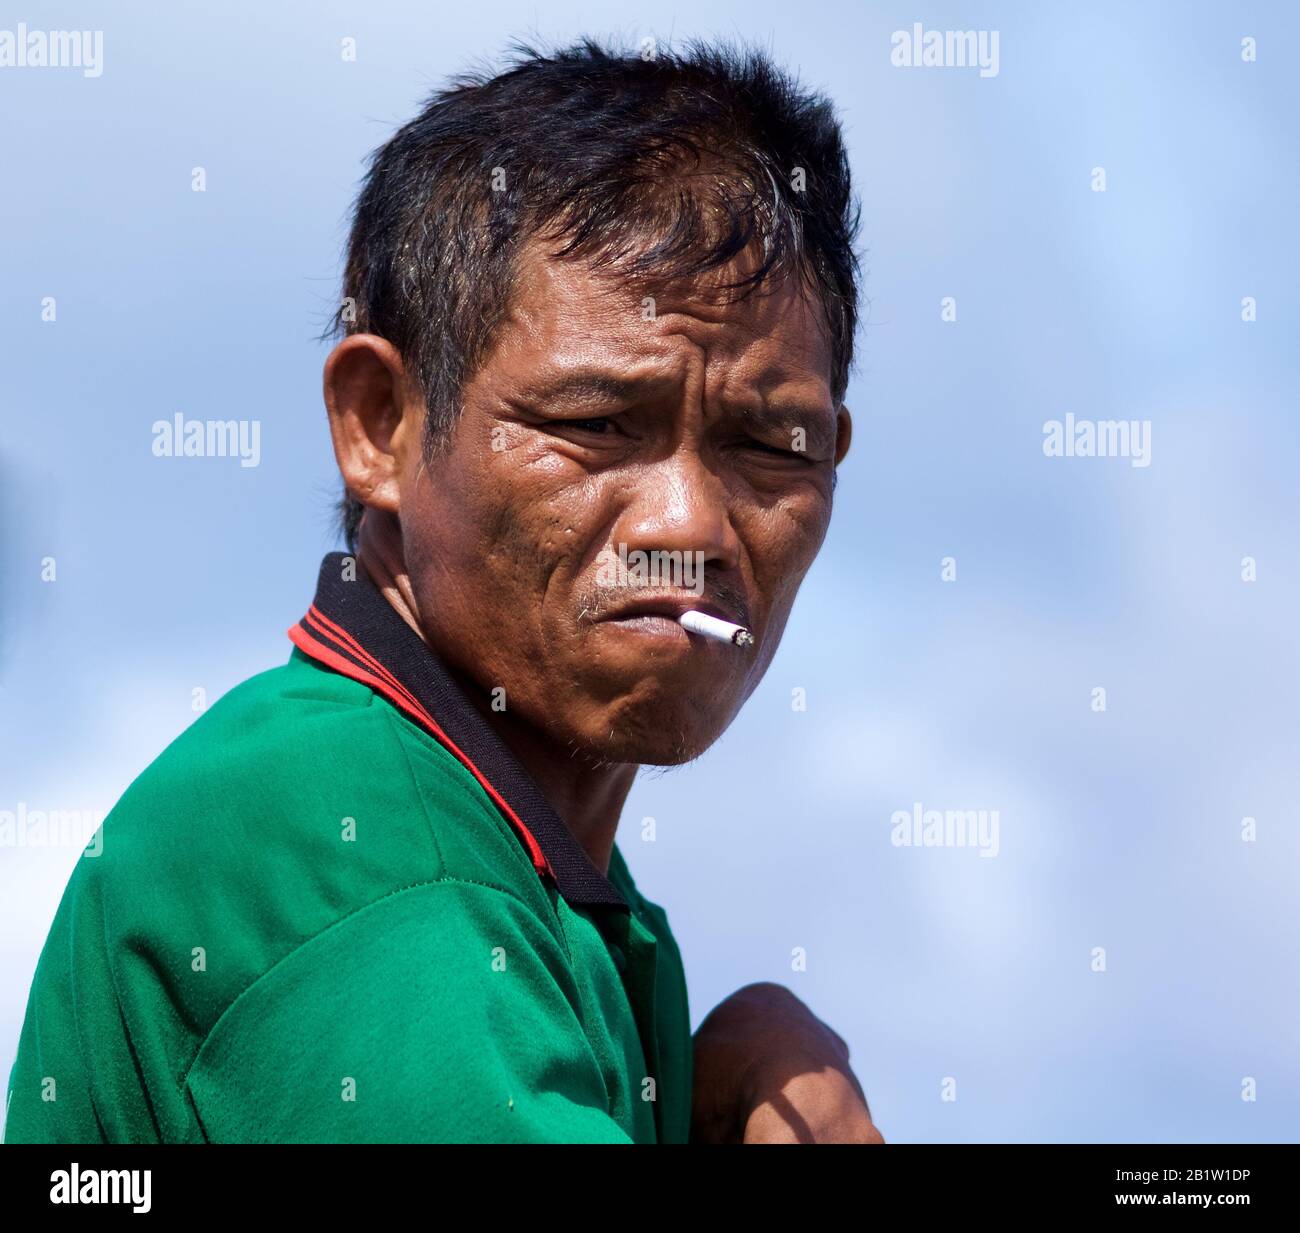 Homme indonésien, passager de bateau pour l'île Raja Ampat - Papouasie occidentale, Indonésie Banque D'Images